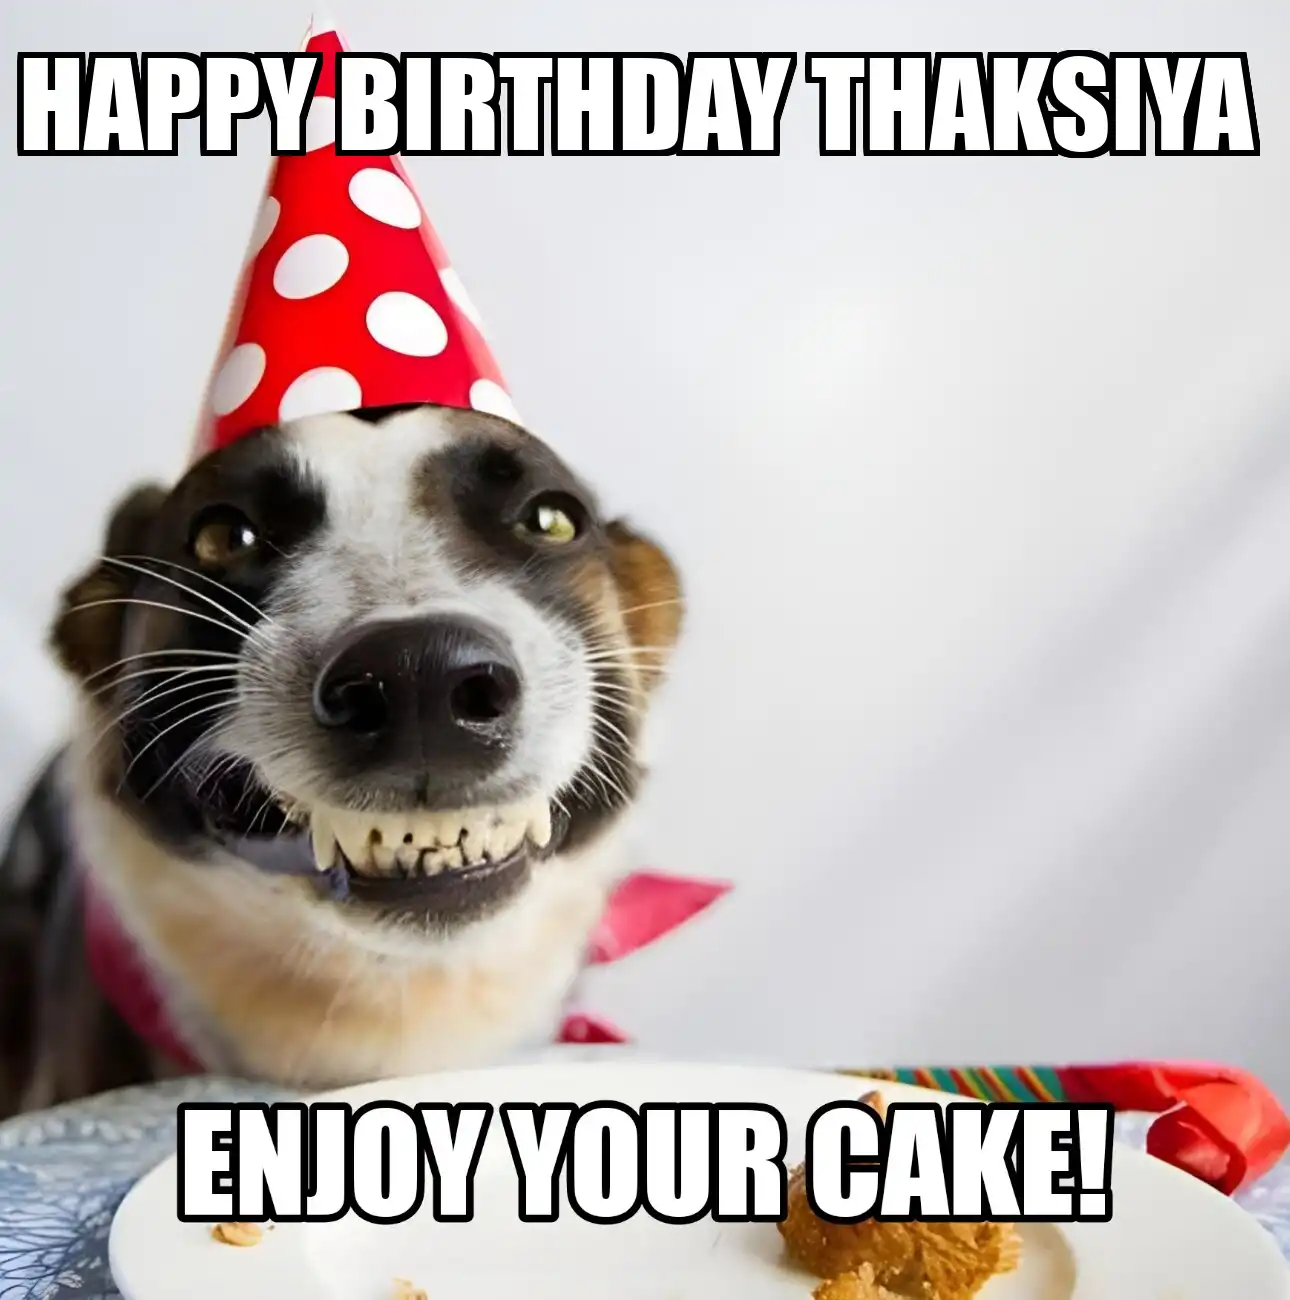 Happy Birthday Thaksiya Enjoy Your Cake Dog Meme